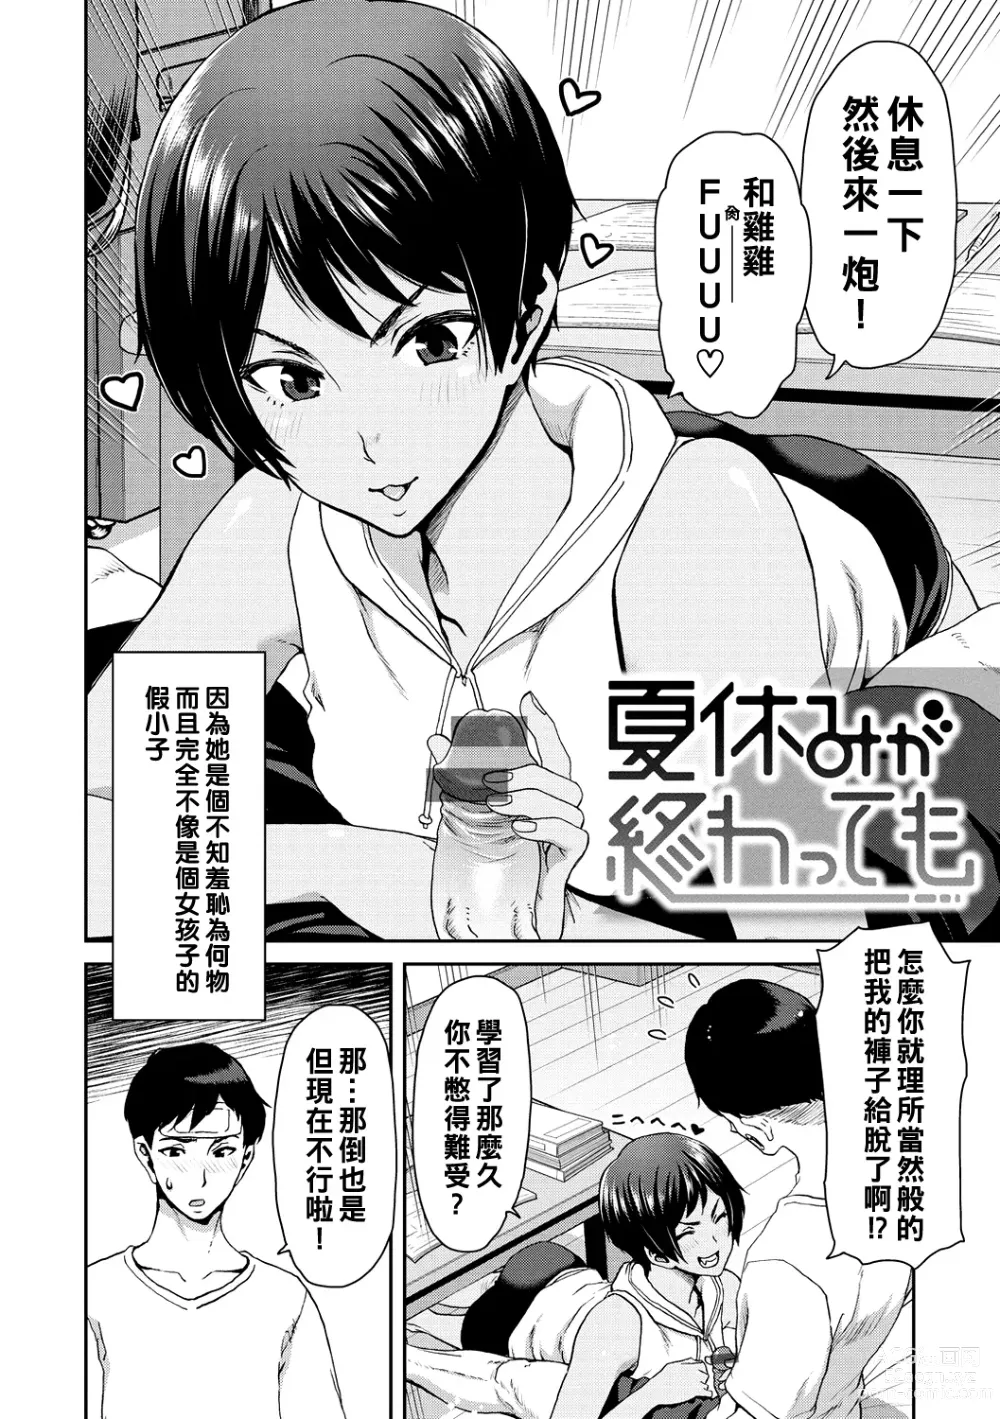 Page 130 of manga Shiyokka Hametsu SEX